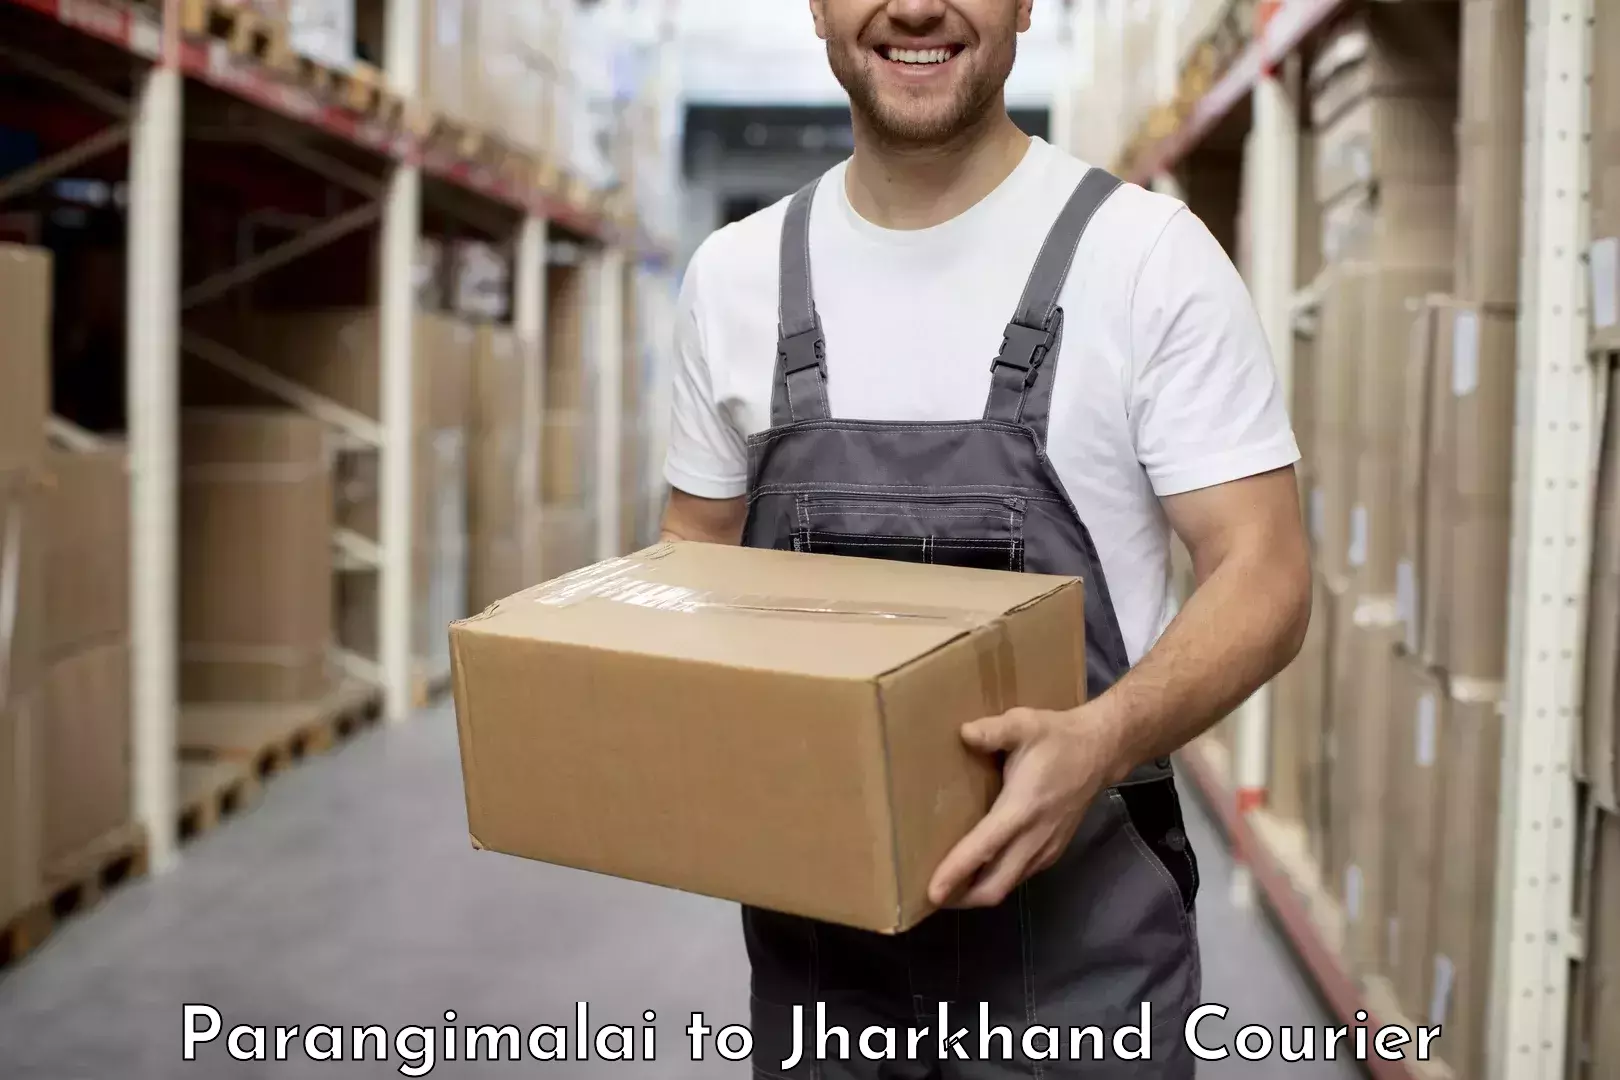 Cost-effective courier options Parangimalai to Seraikela Kharsawan